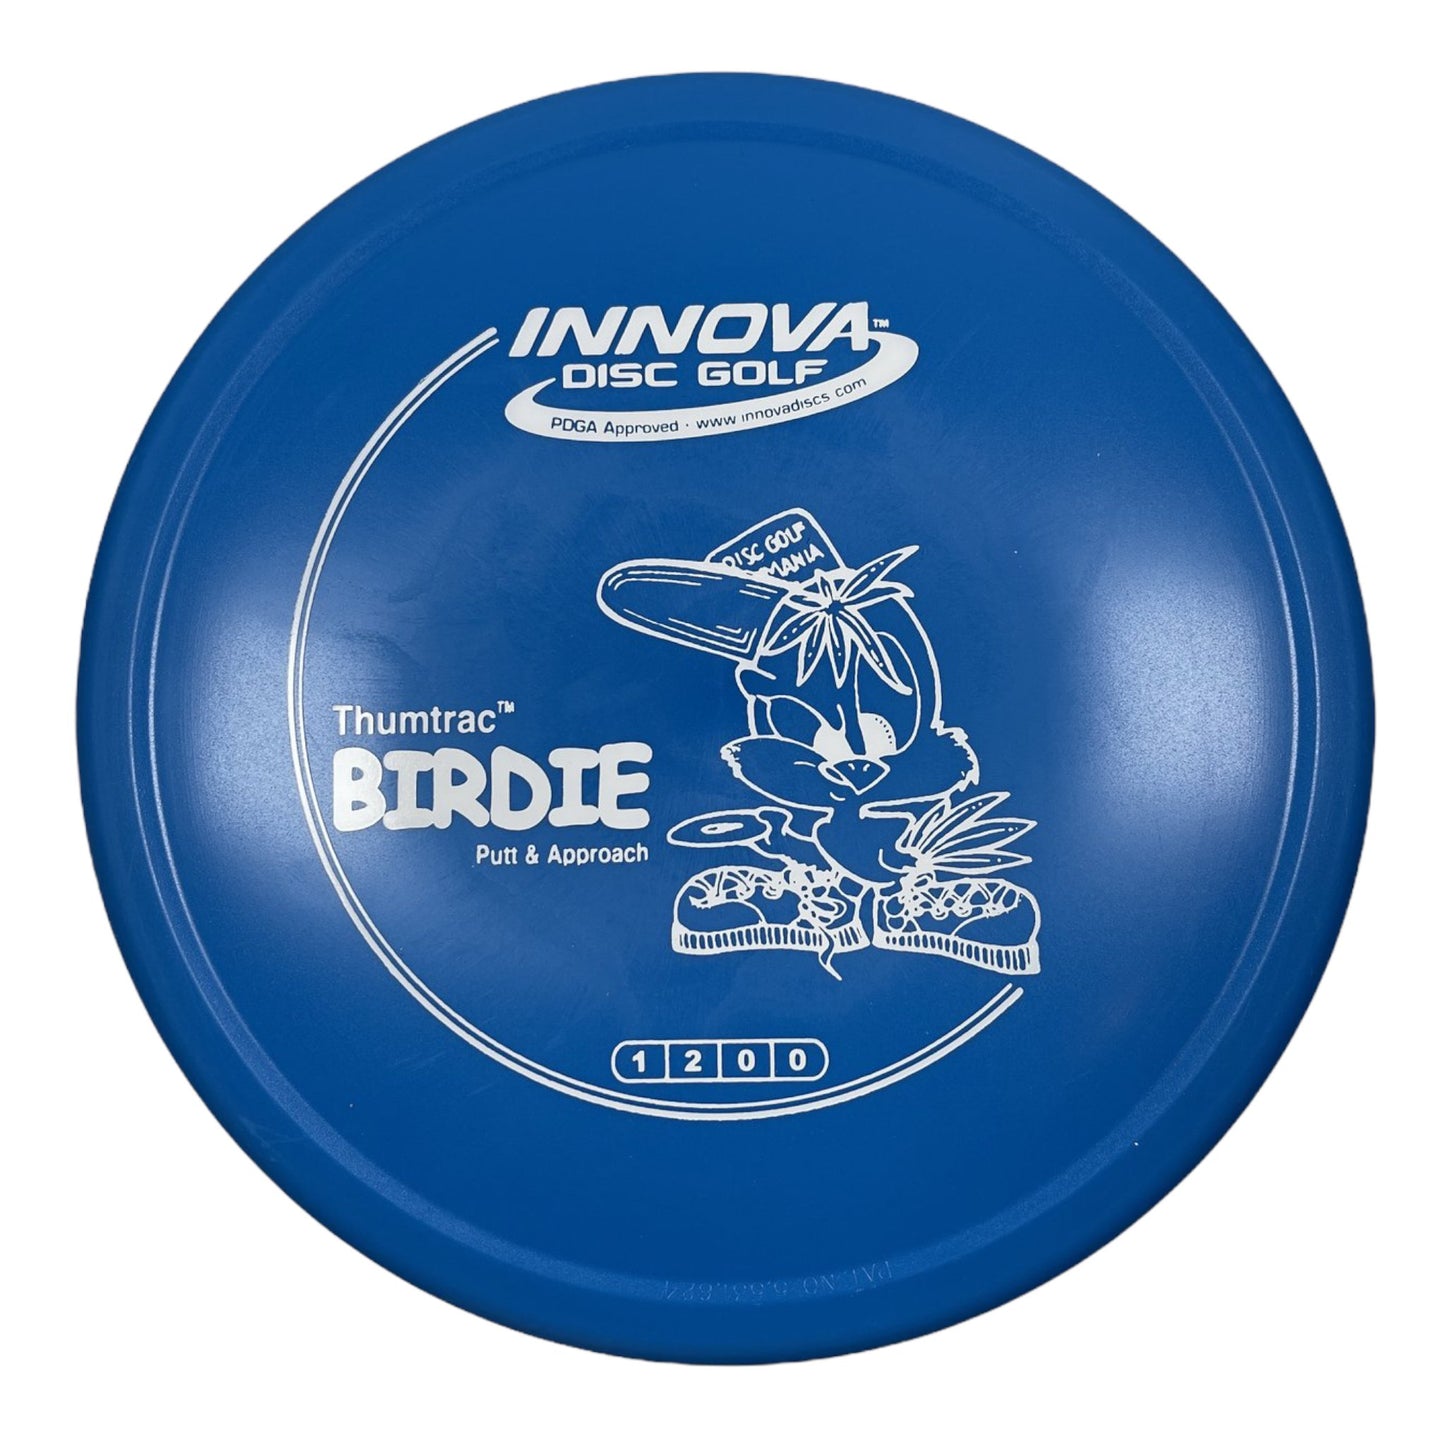 Innova Champion Discs Birdie | DX | Blue/White 158g Disc Golf